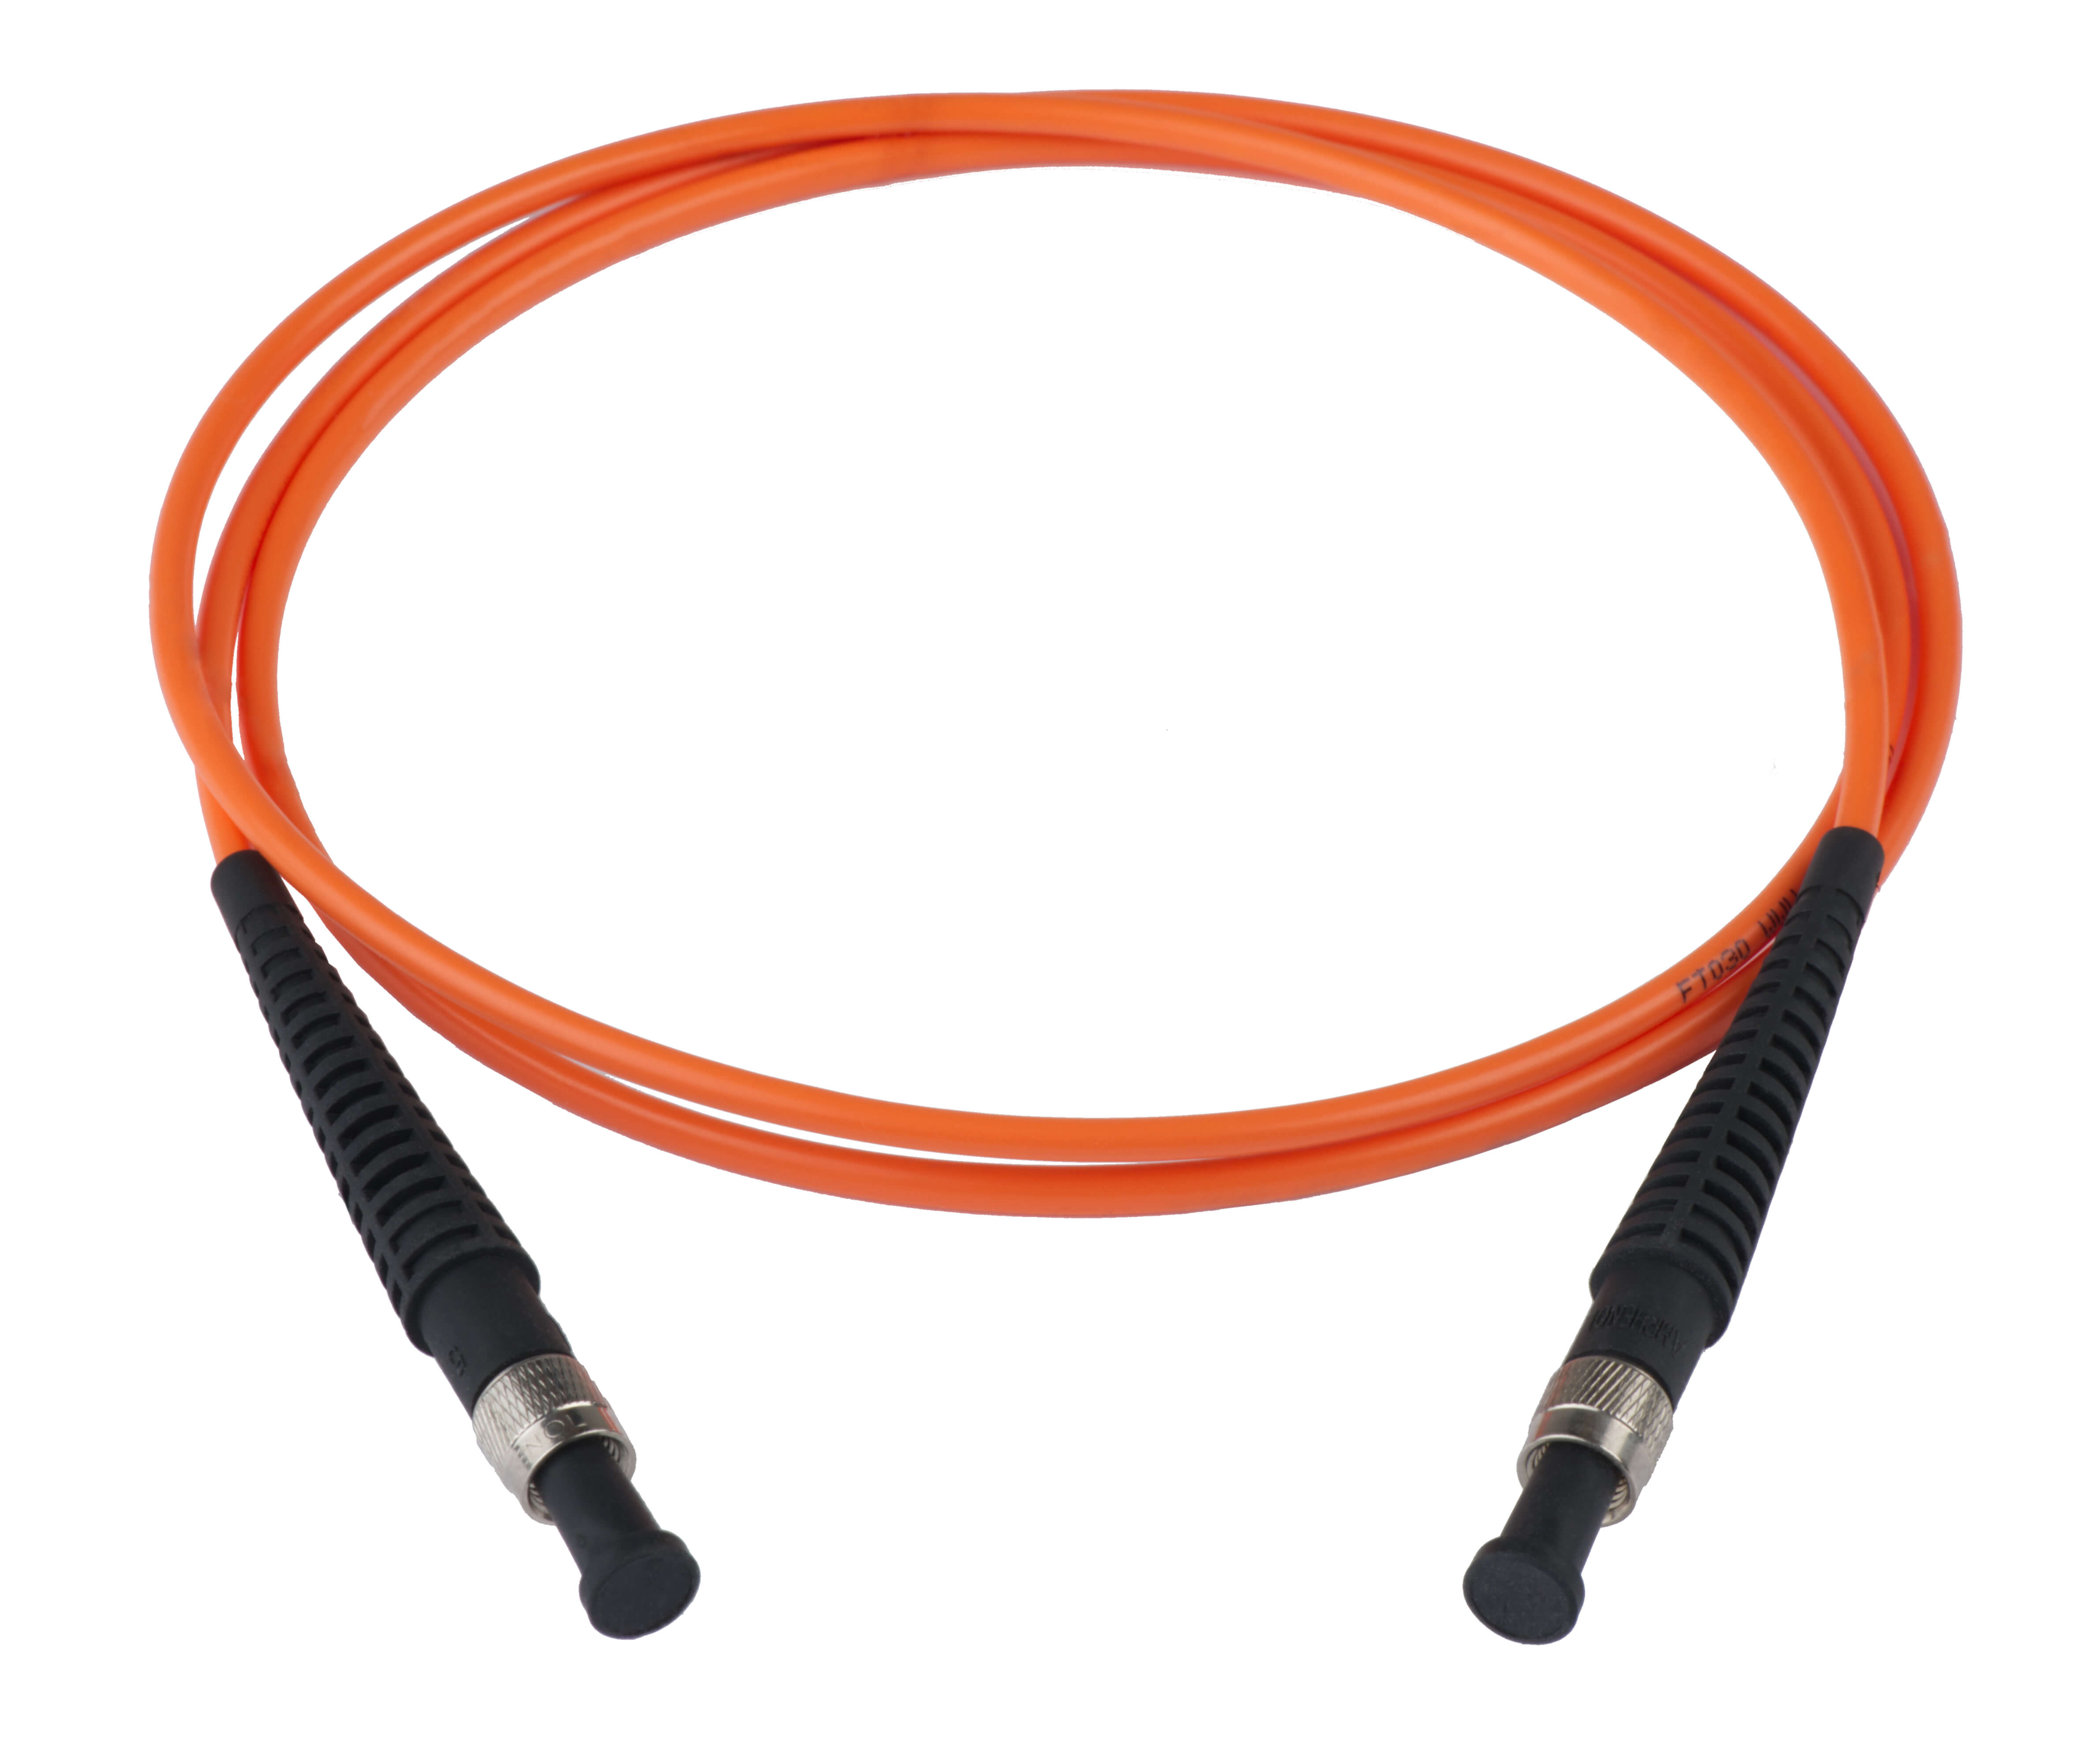 DSC_6677 Fiber Patch Cable.jpg